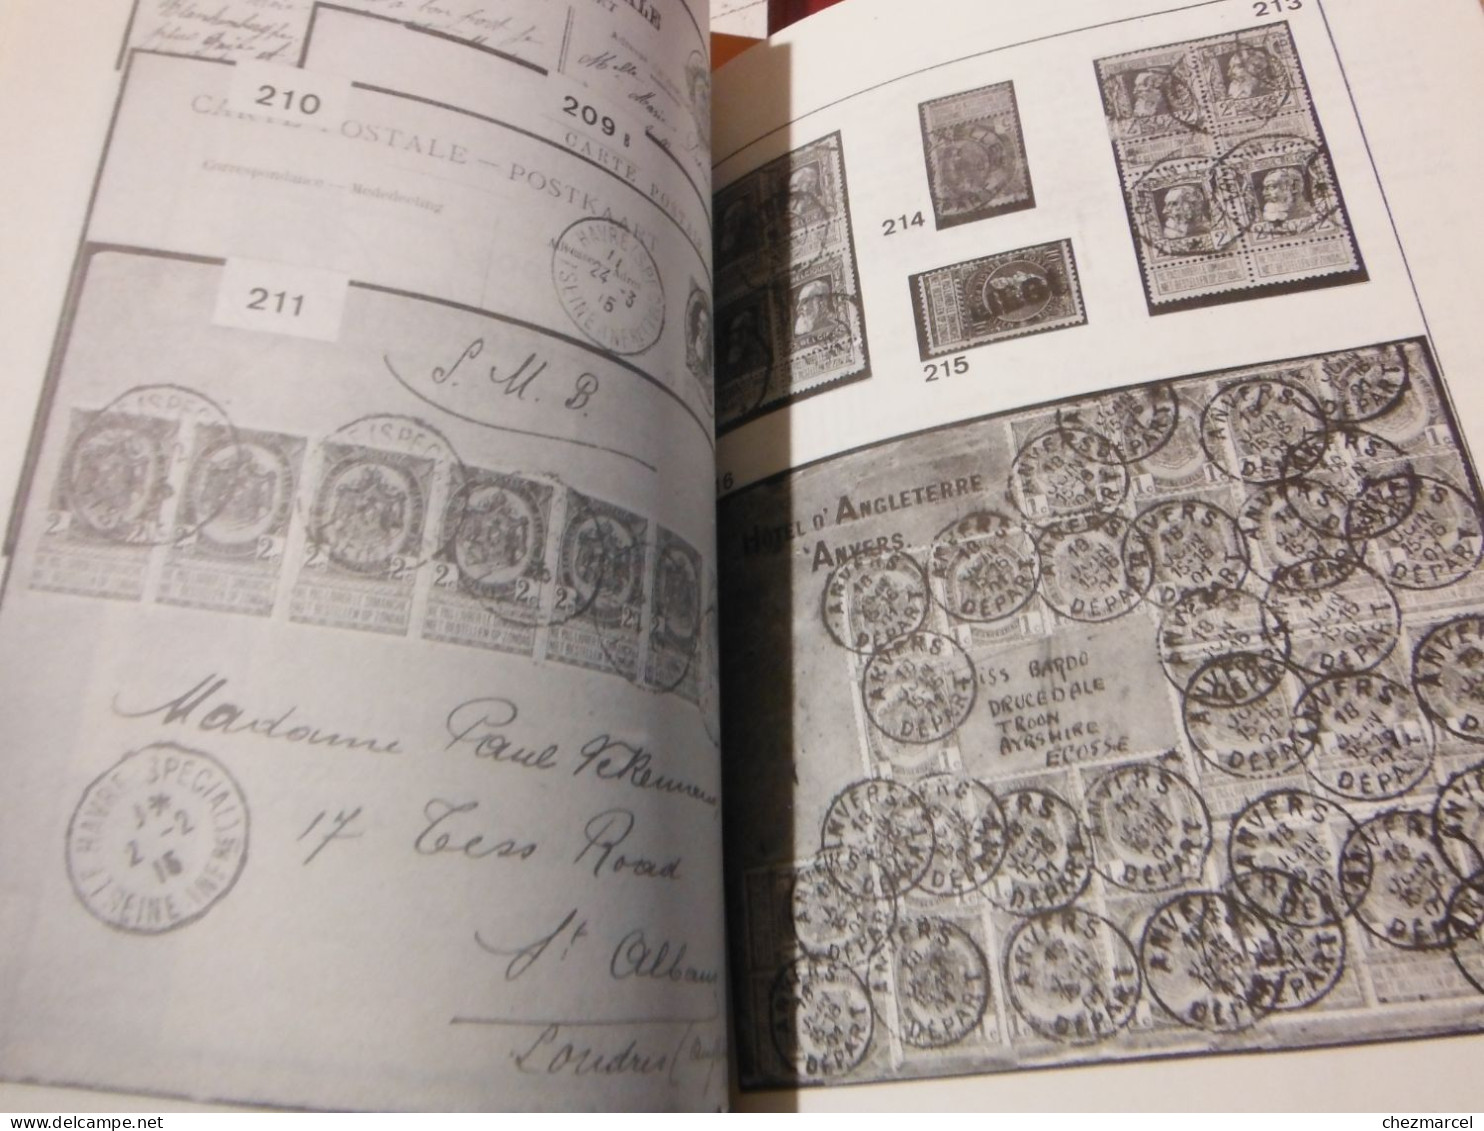 BELGIQUE-2 livres initiation aux classiques belges -les emissions de 1893 -1905 leurs marques postales